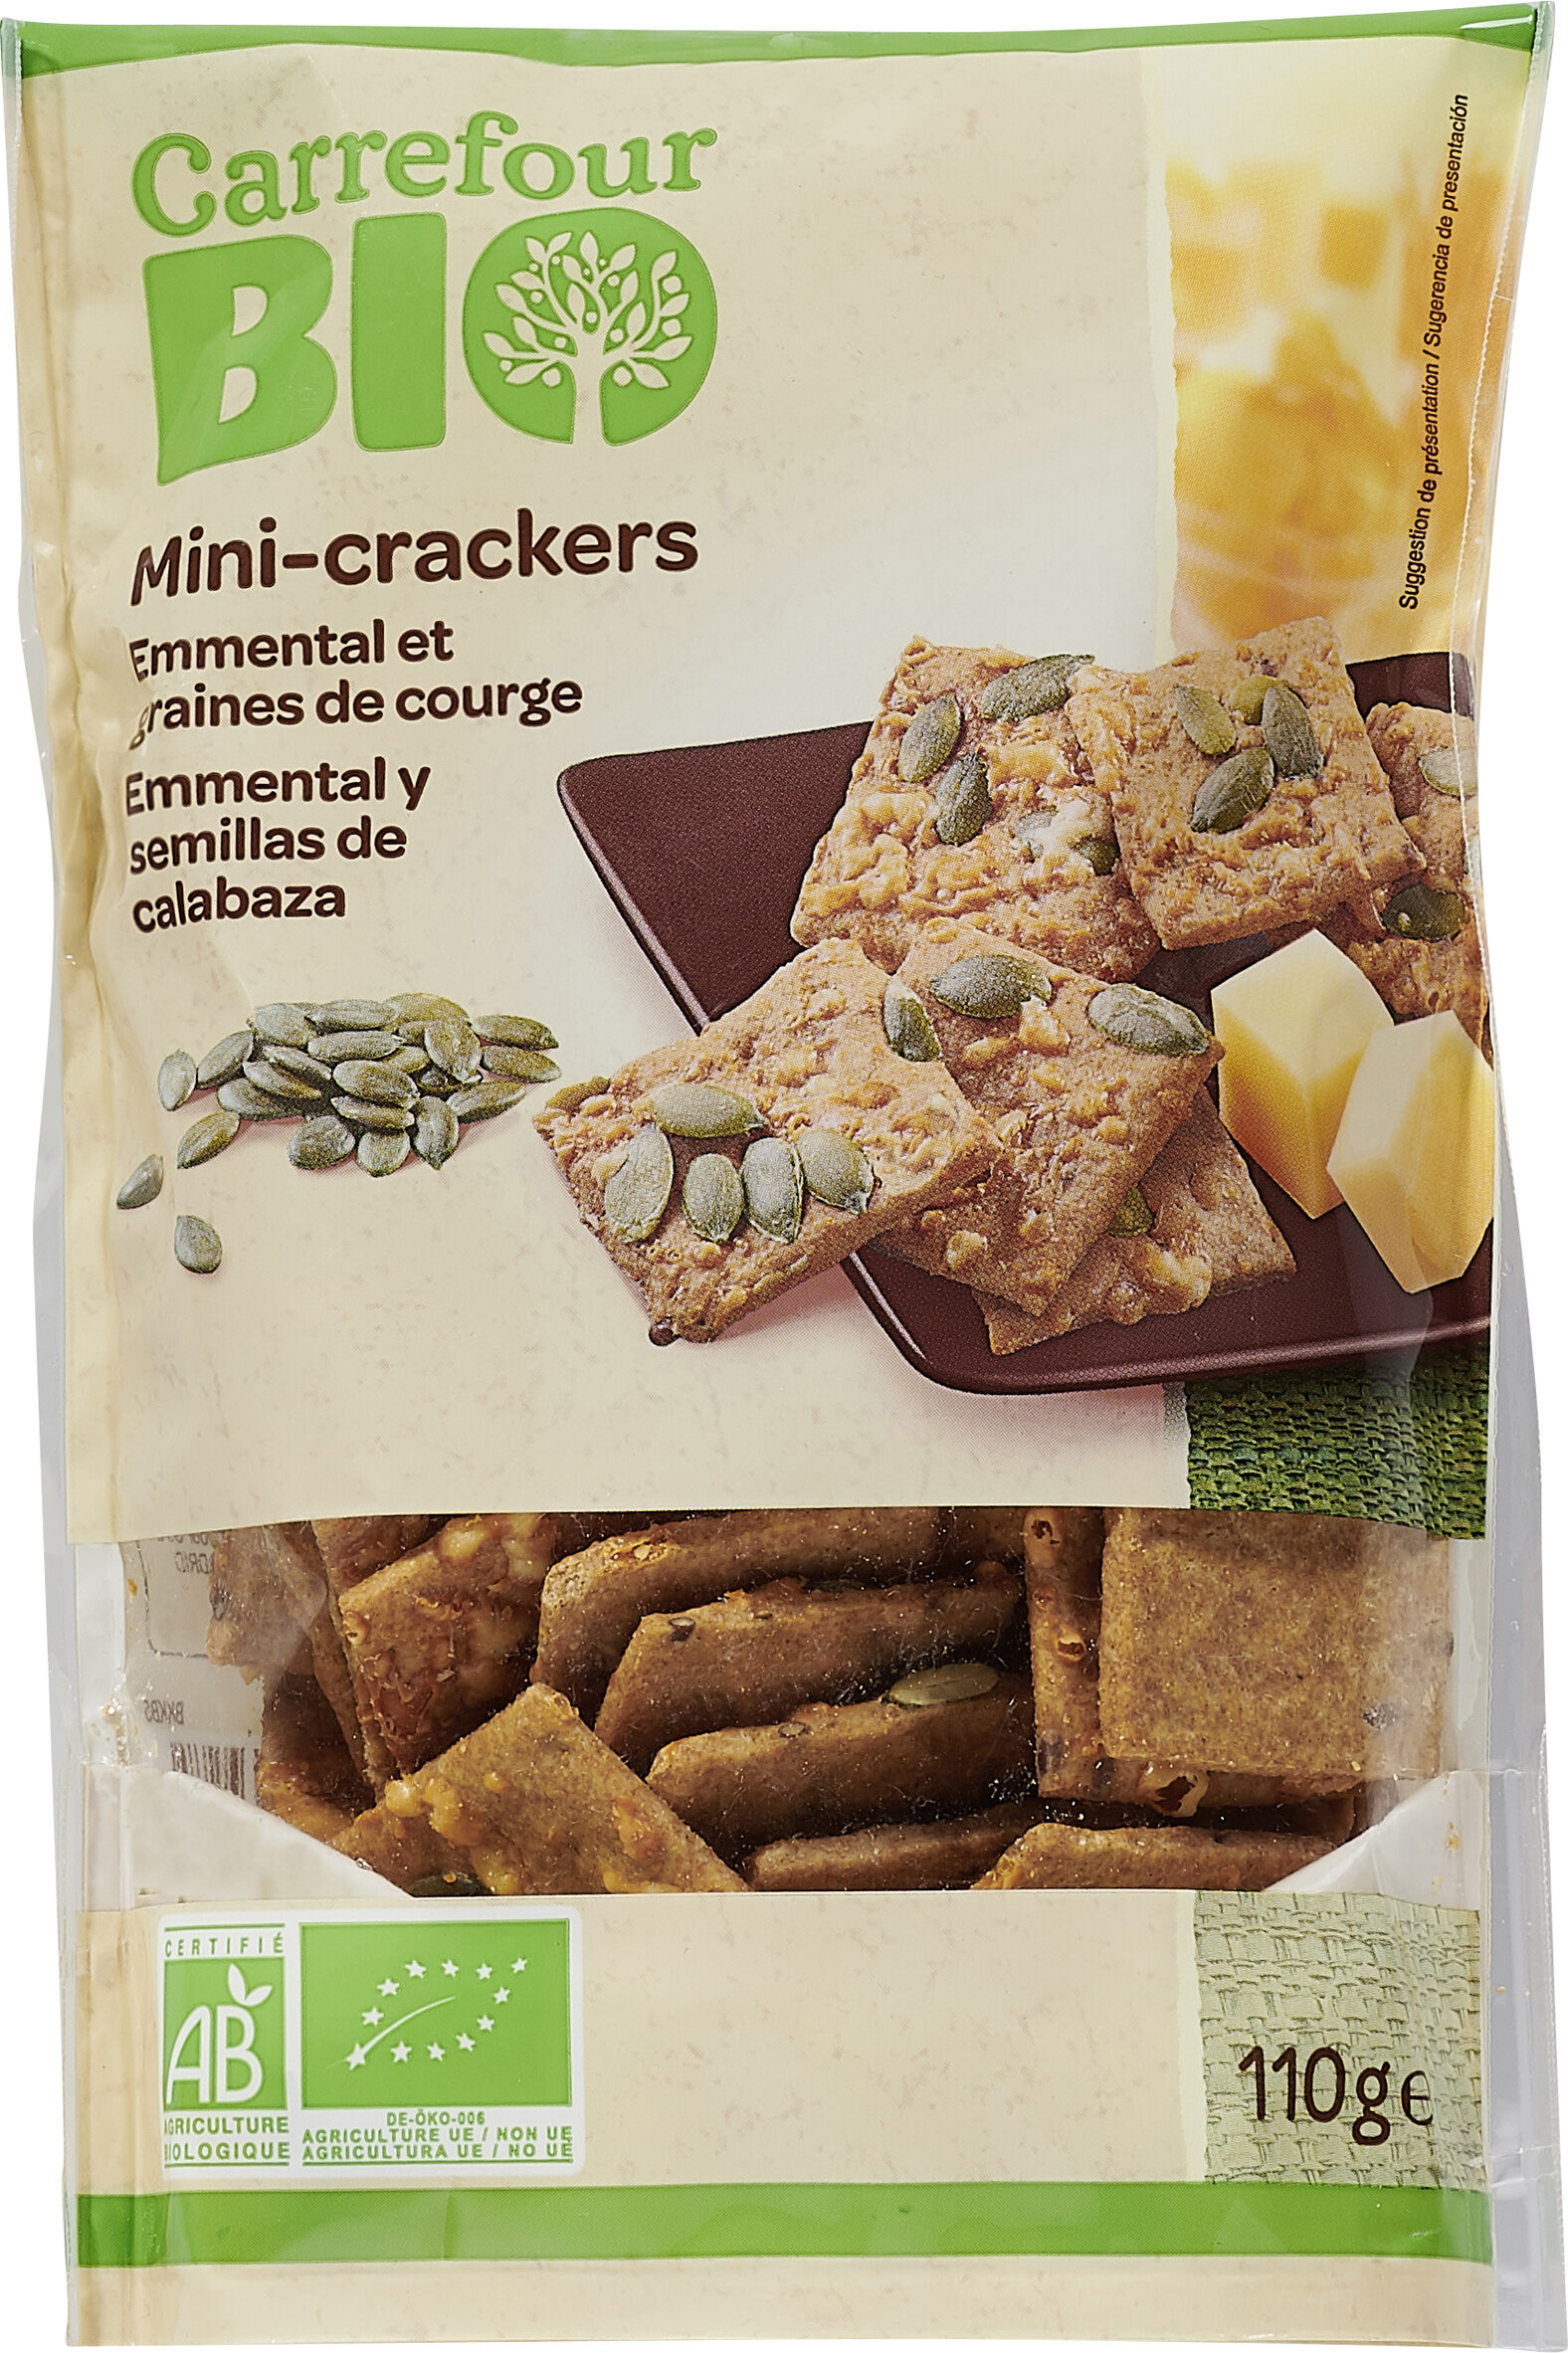 Mini-crackers emmental et graines de courge - Product - fr